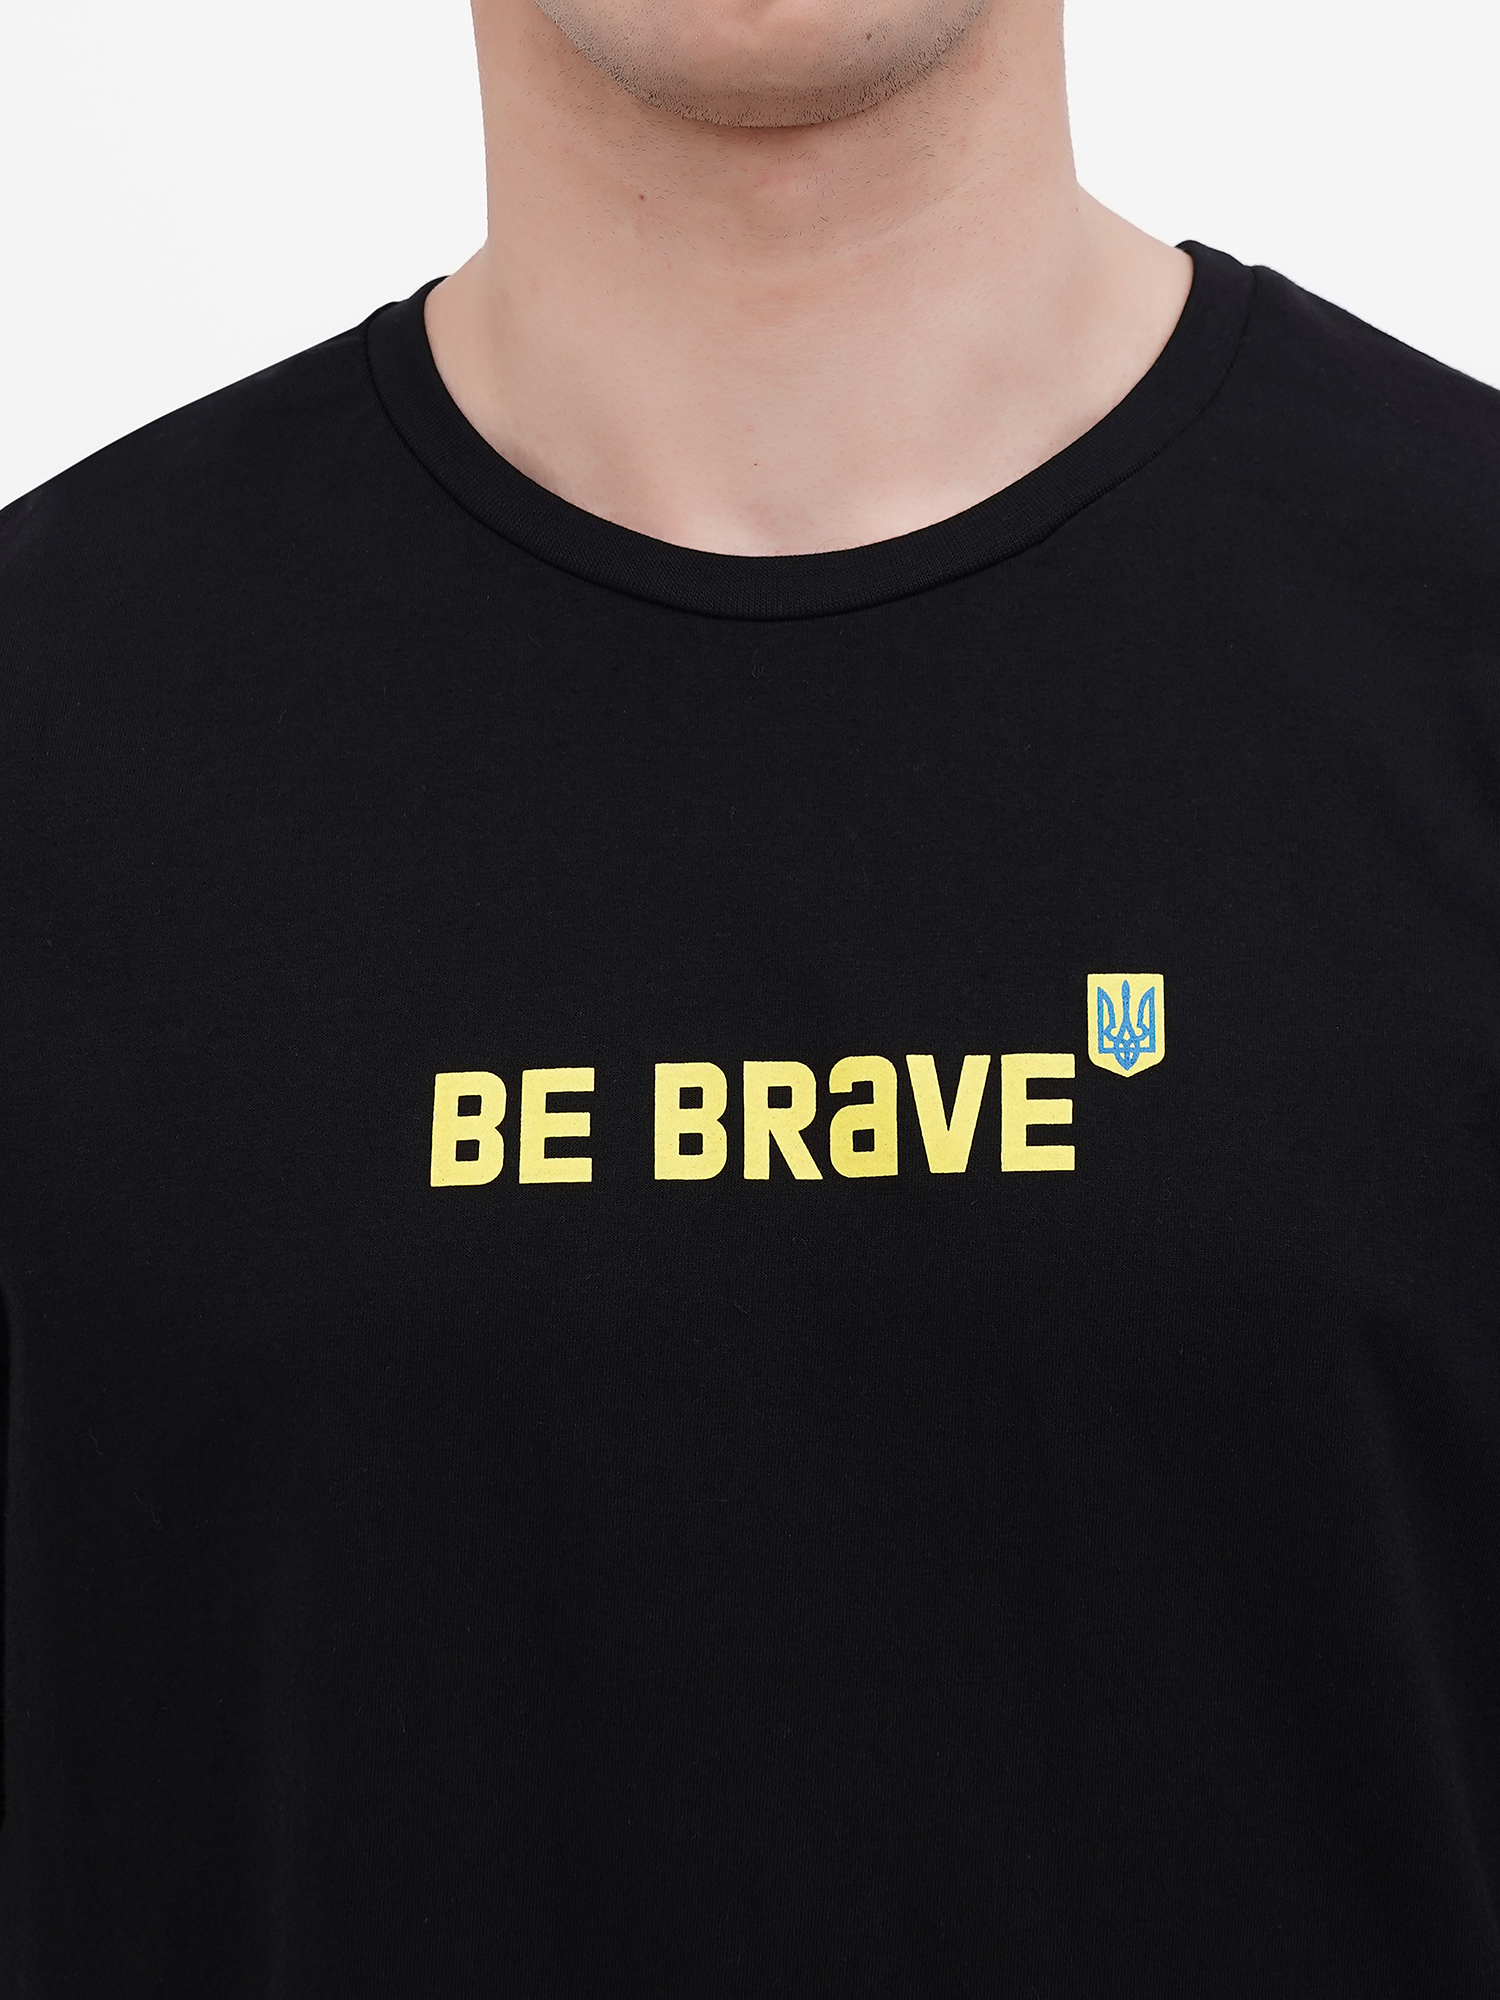 Картинка Футболка "Be brave" чорна